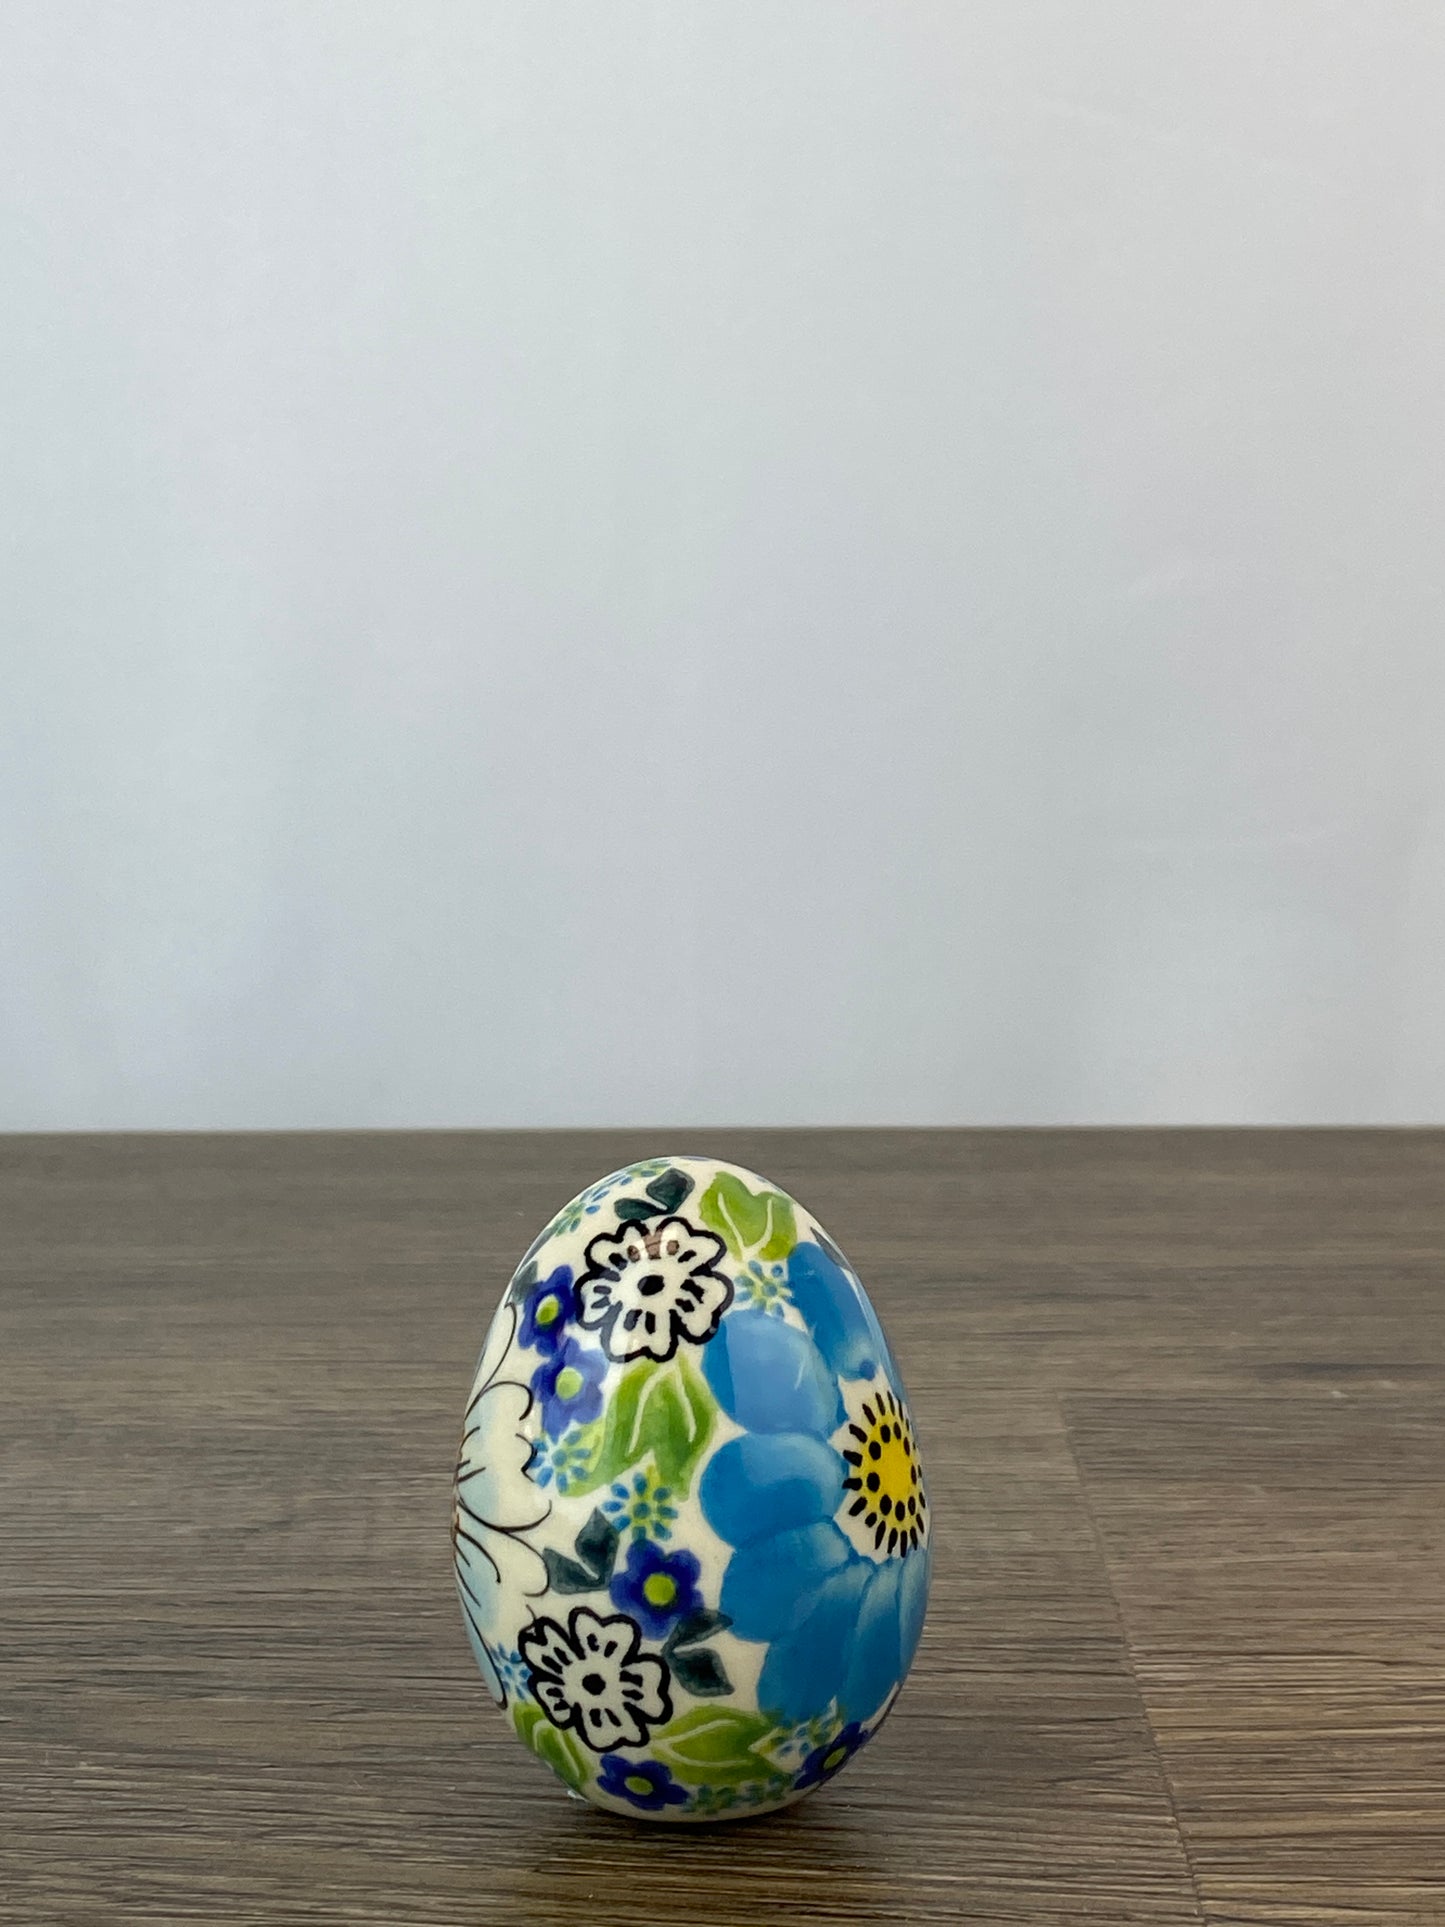 Vena Large Ceramic Easter Egg - Shape V037 - Pattern U598